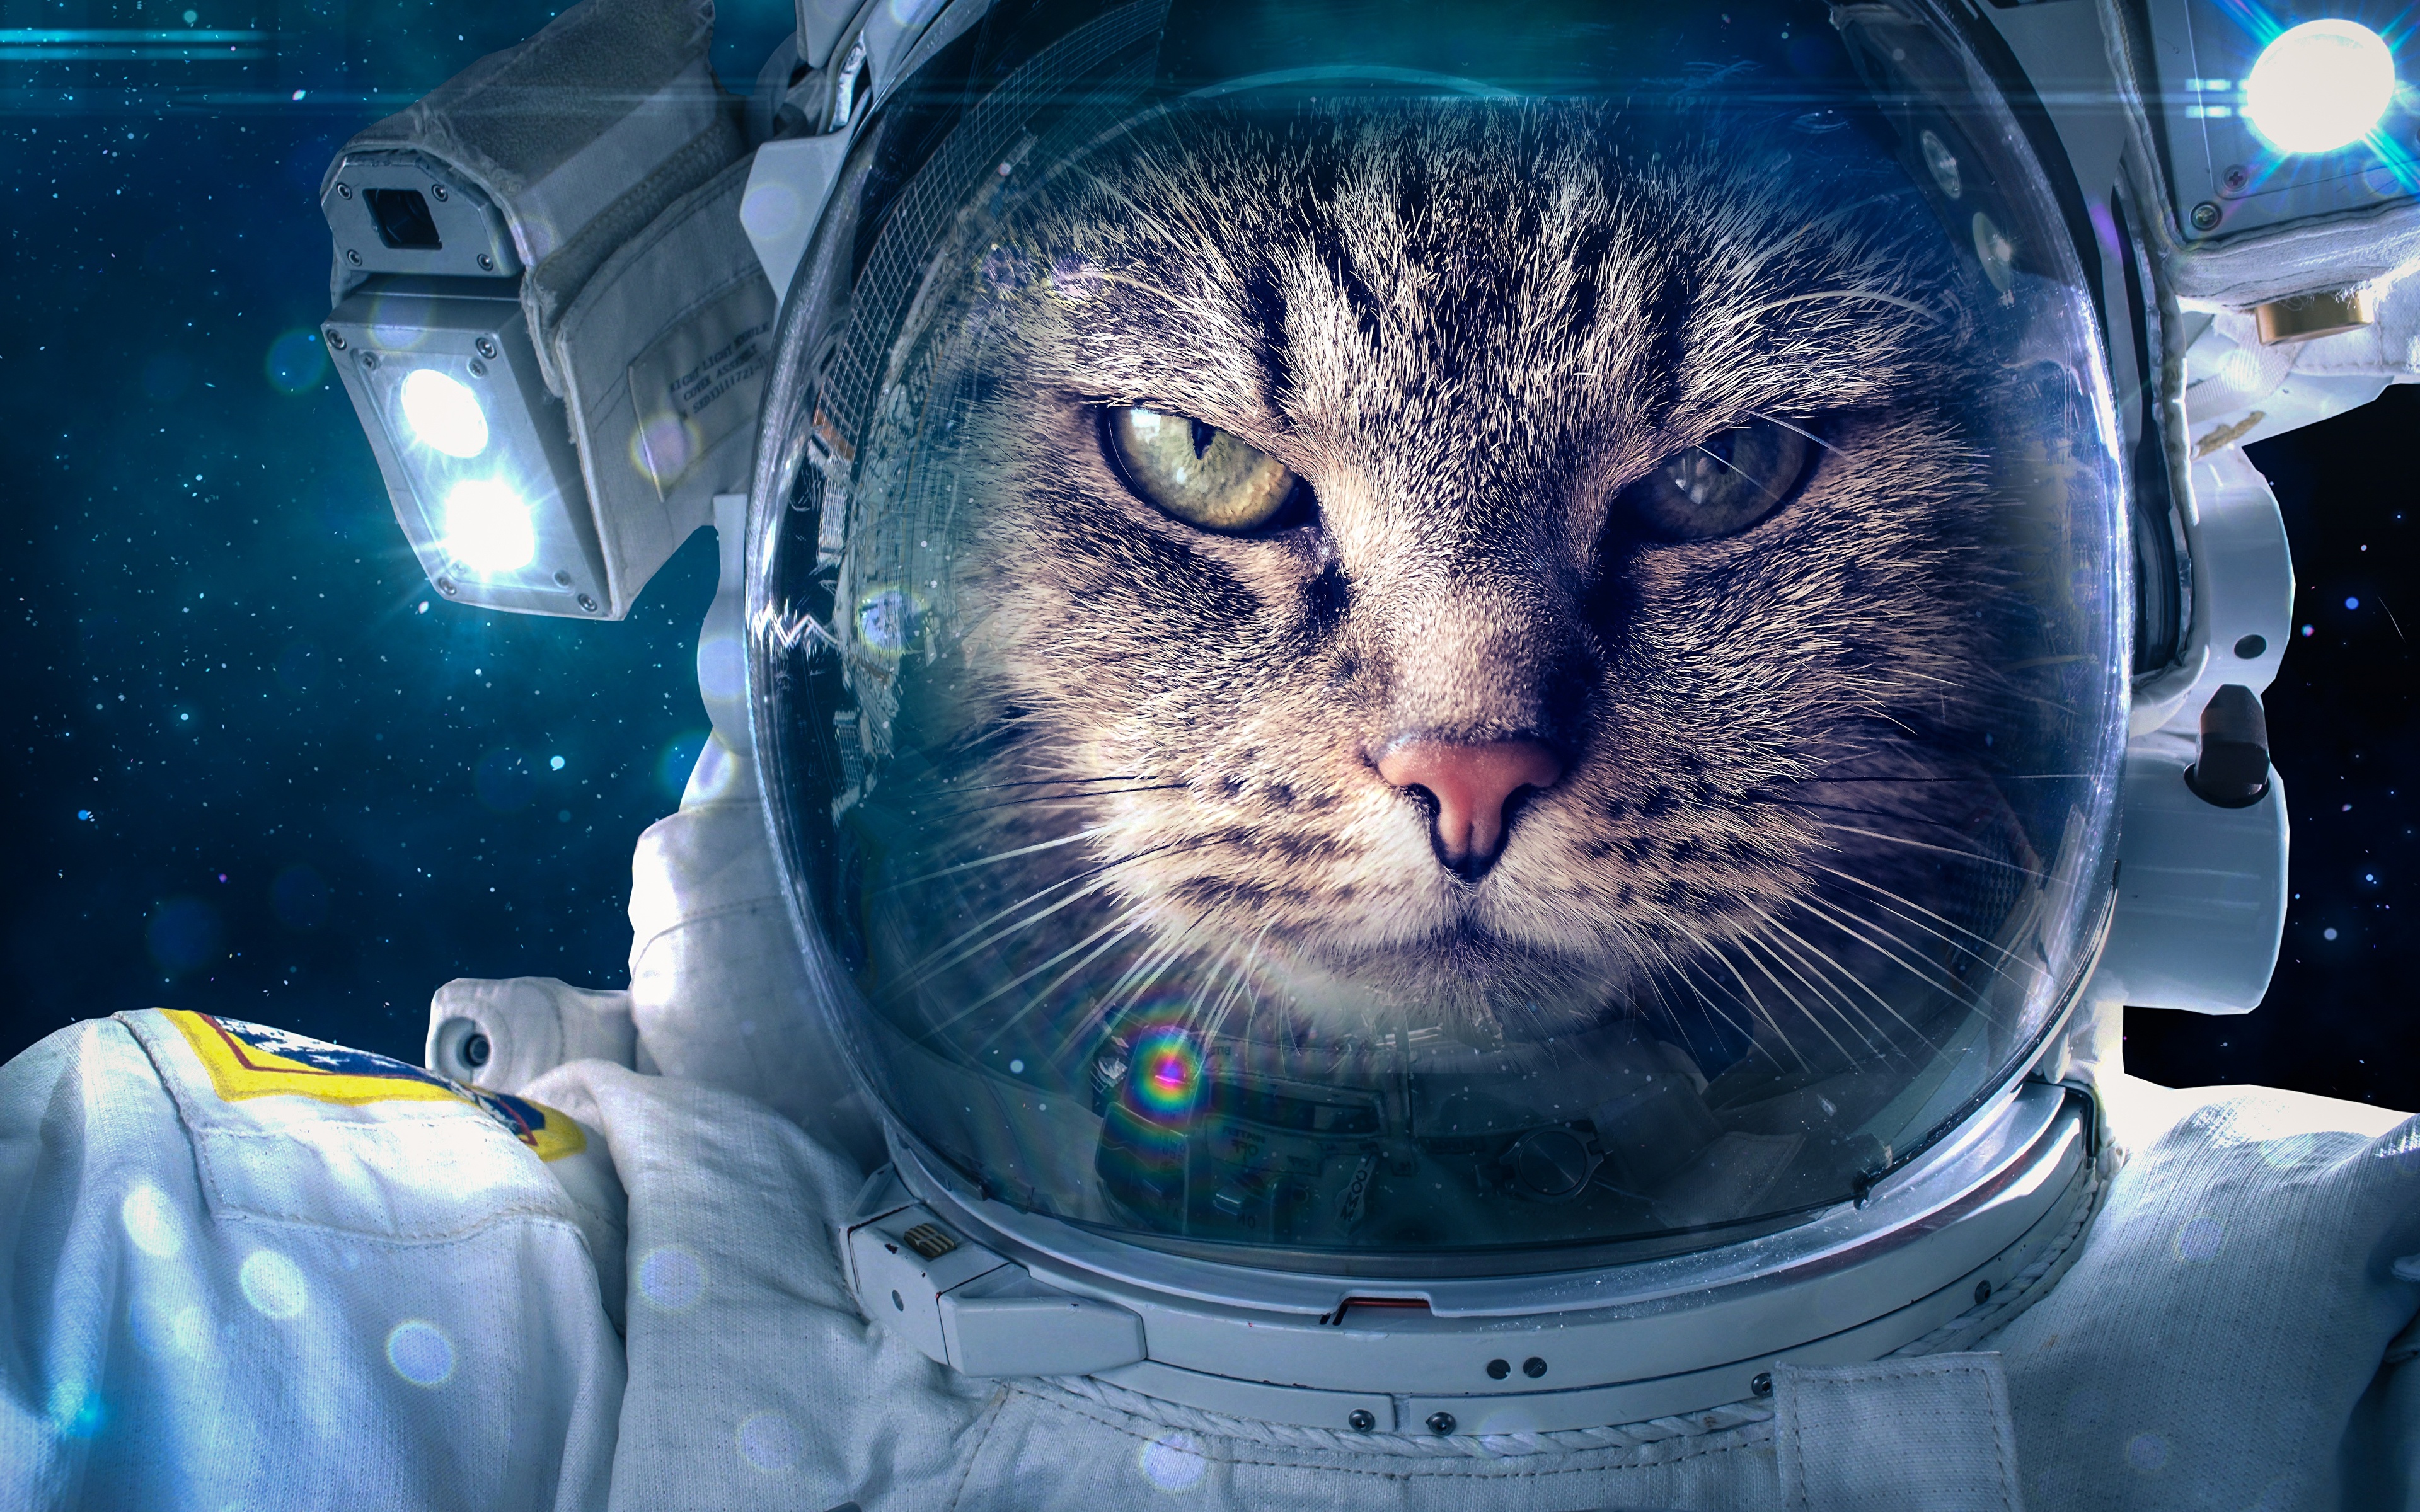 壁紙 3840x2400 飼い猫 宇宙飛行士 おもしろい 動物 ダウンロード 写真